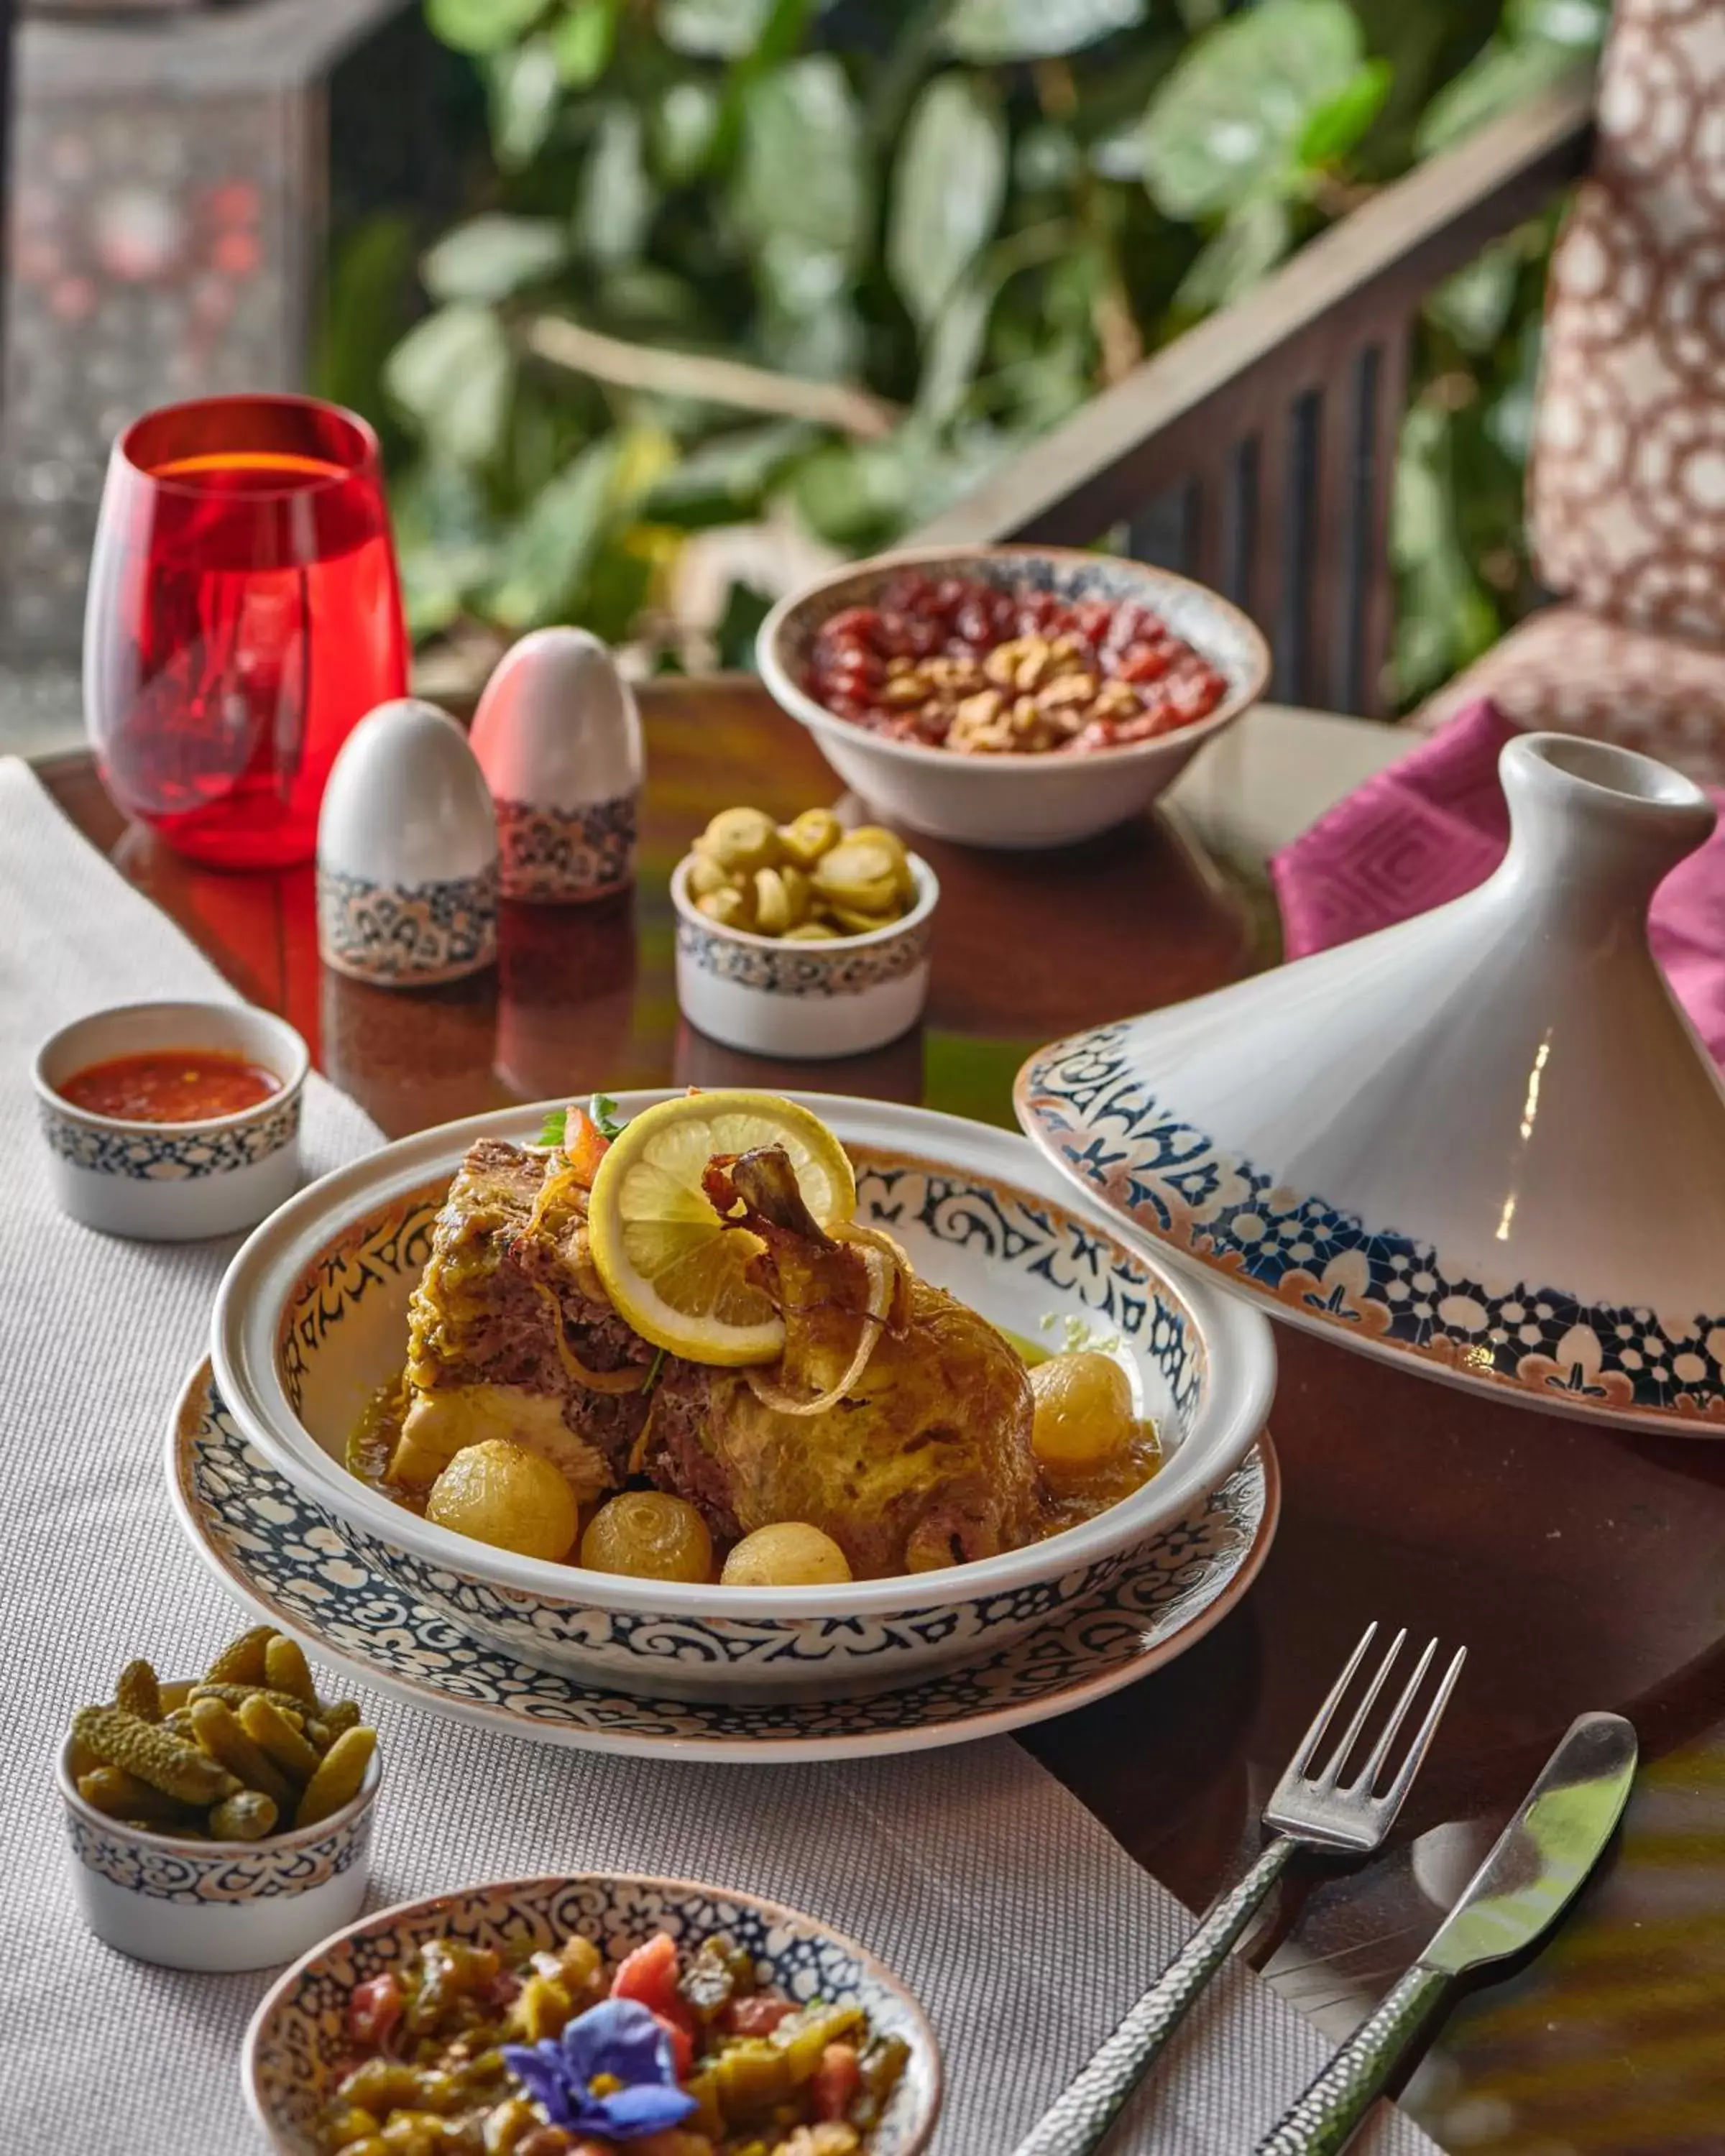 Restaurant/places to eat in Sofitel Cairo Nile El Gezirah